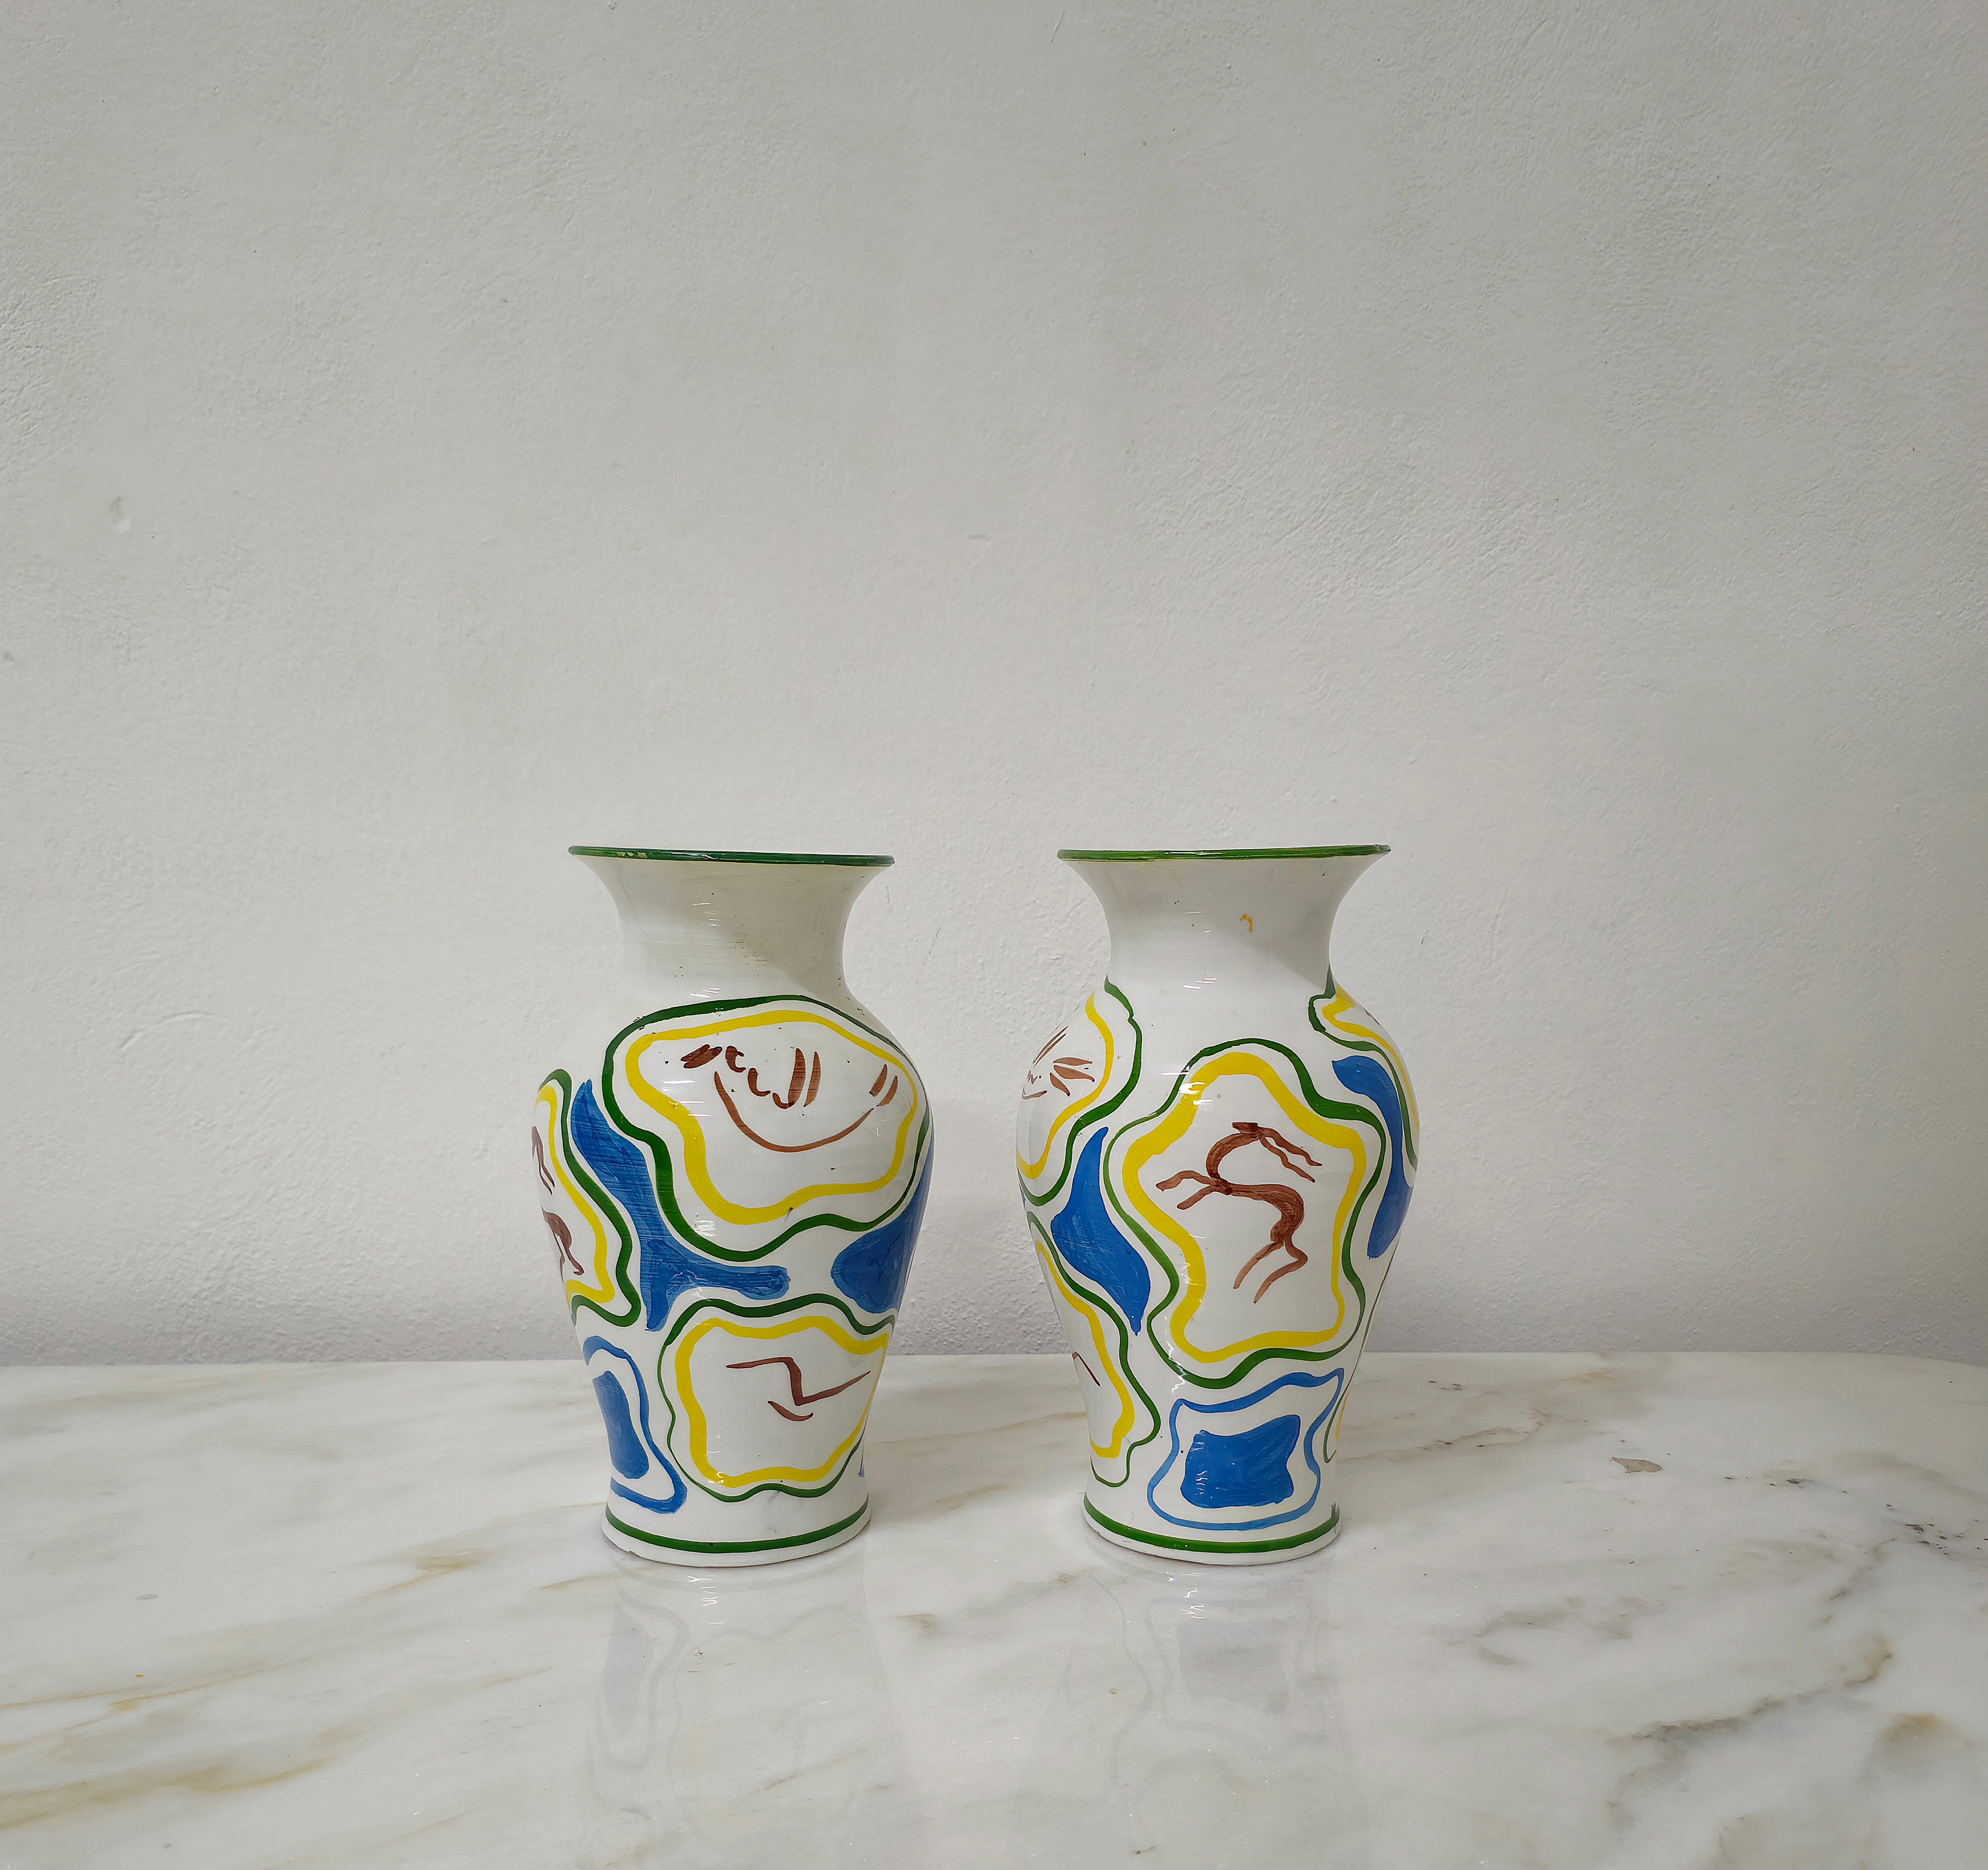 Lot de 2 vases en céramique émaillée blanche, verte, bleu clair, jaune et avec des motifs d'animaux dans les tons de brun. Fabriqué en Italie dans les années 60.



Note : Nous essayons d'offrir à nos clients un excellent service, même pour les